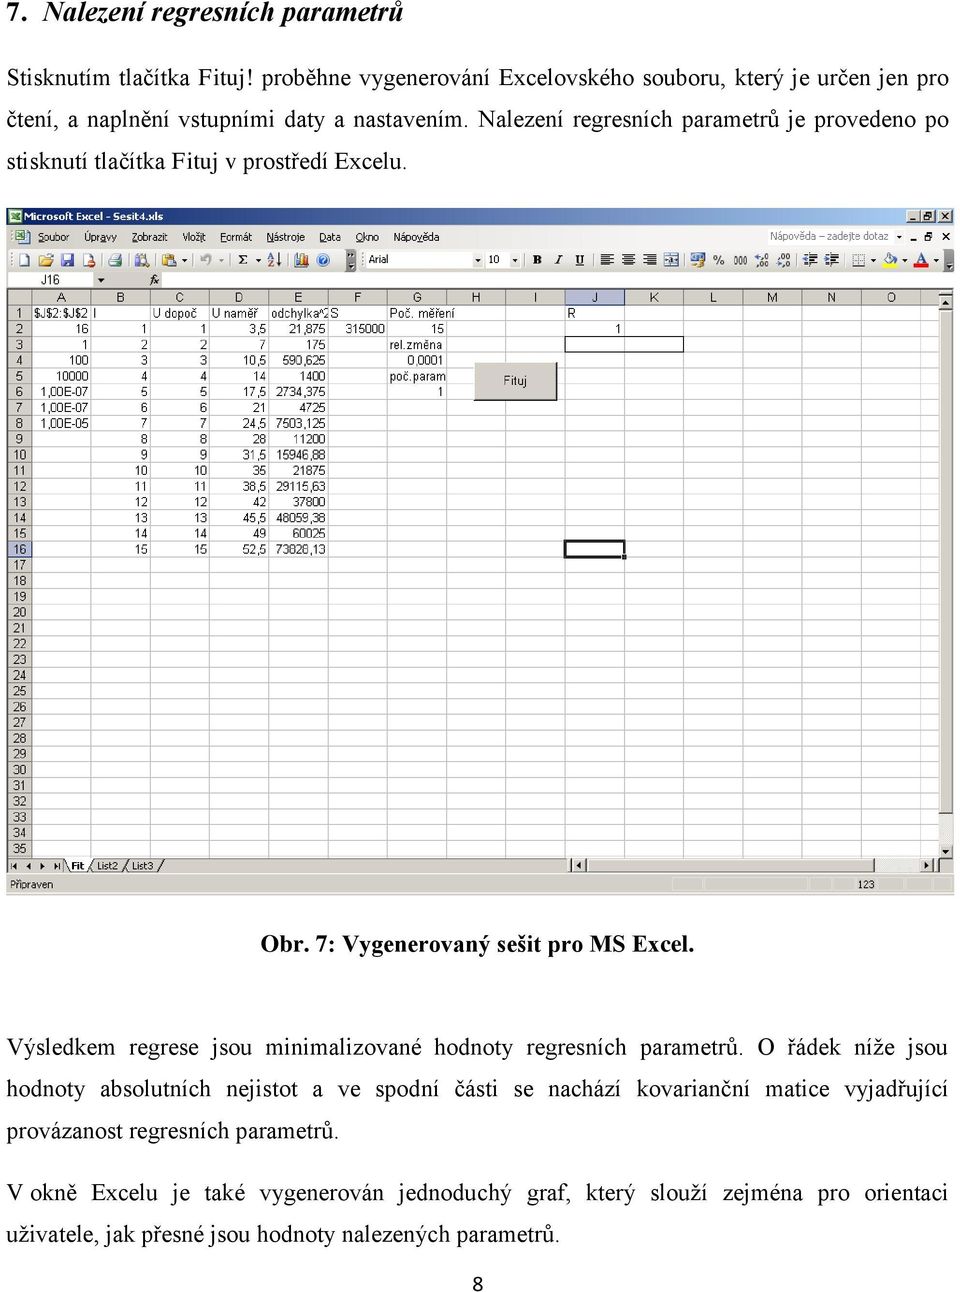 Nalezení regresních parametrů je provedeno po stisknutí tlačítka Fituj v prostředí Excelu. Obr. 7: Vygenerovaný sešit pro MS Excel.